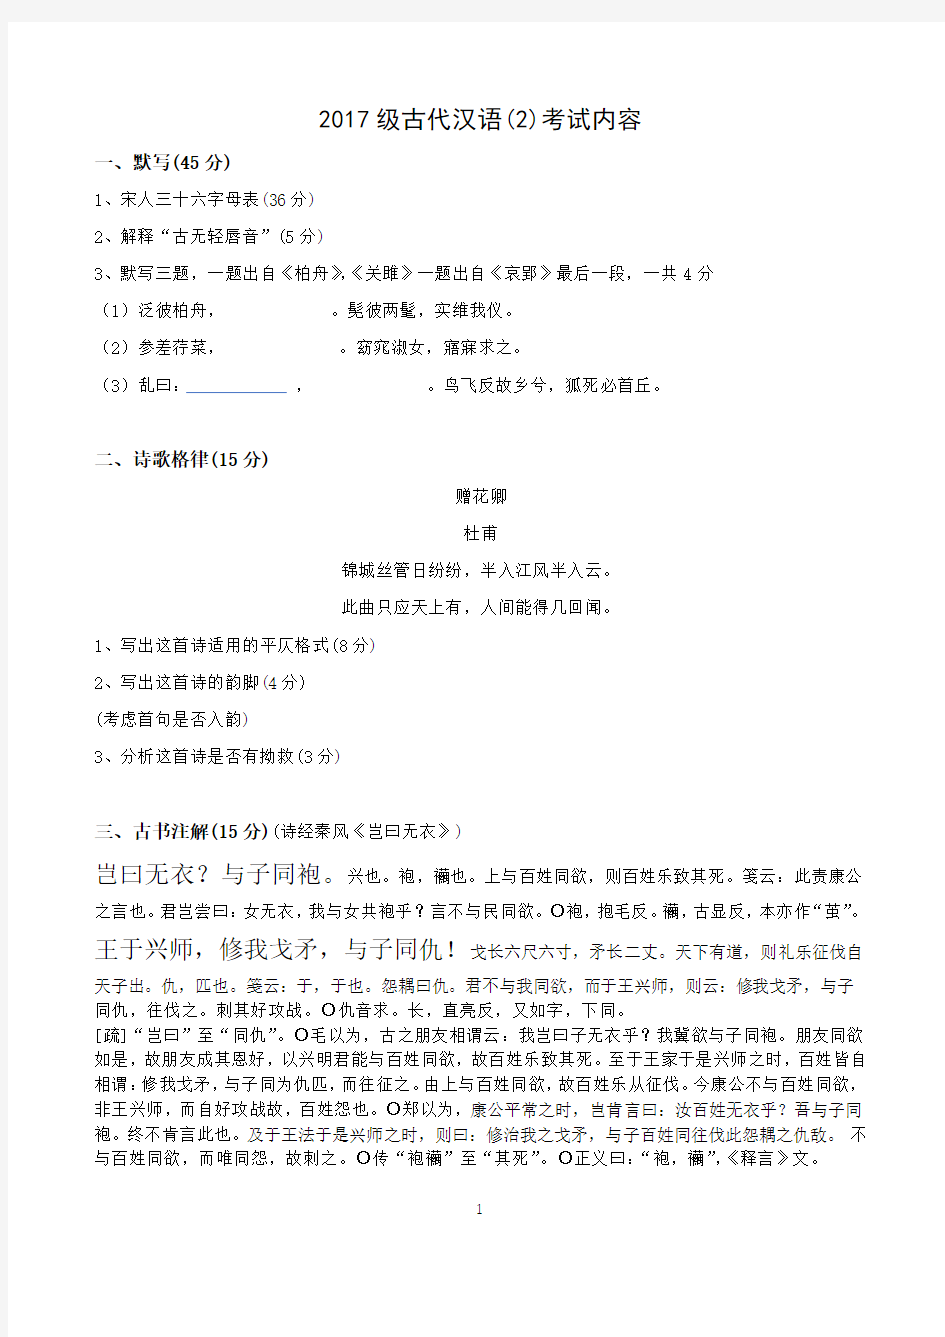 华南师范大学2017级古代汉语(2)期末考试卷